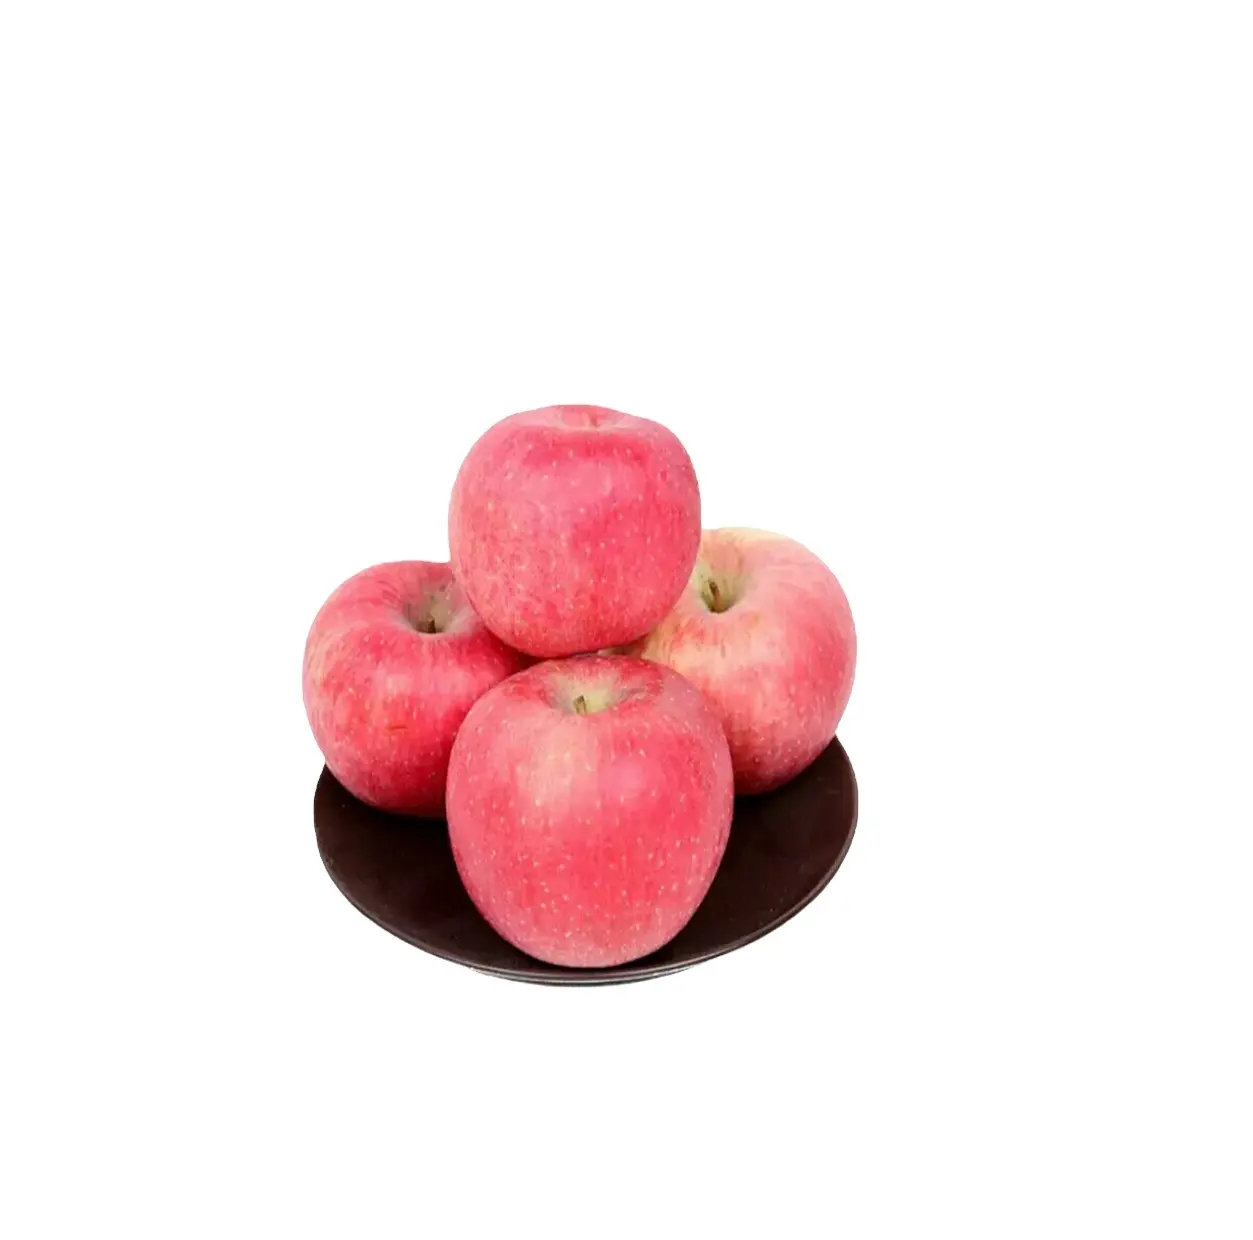 Fuji elma altın gala kırmızı yeni tatlı tarzı organik renk ağırlık kökenli tip meyve için çeşitli satış